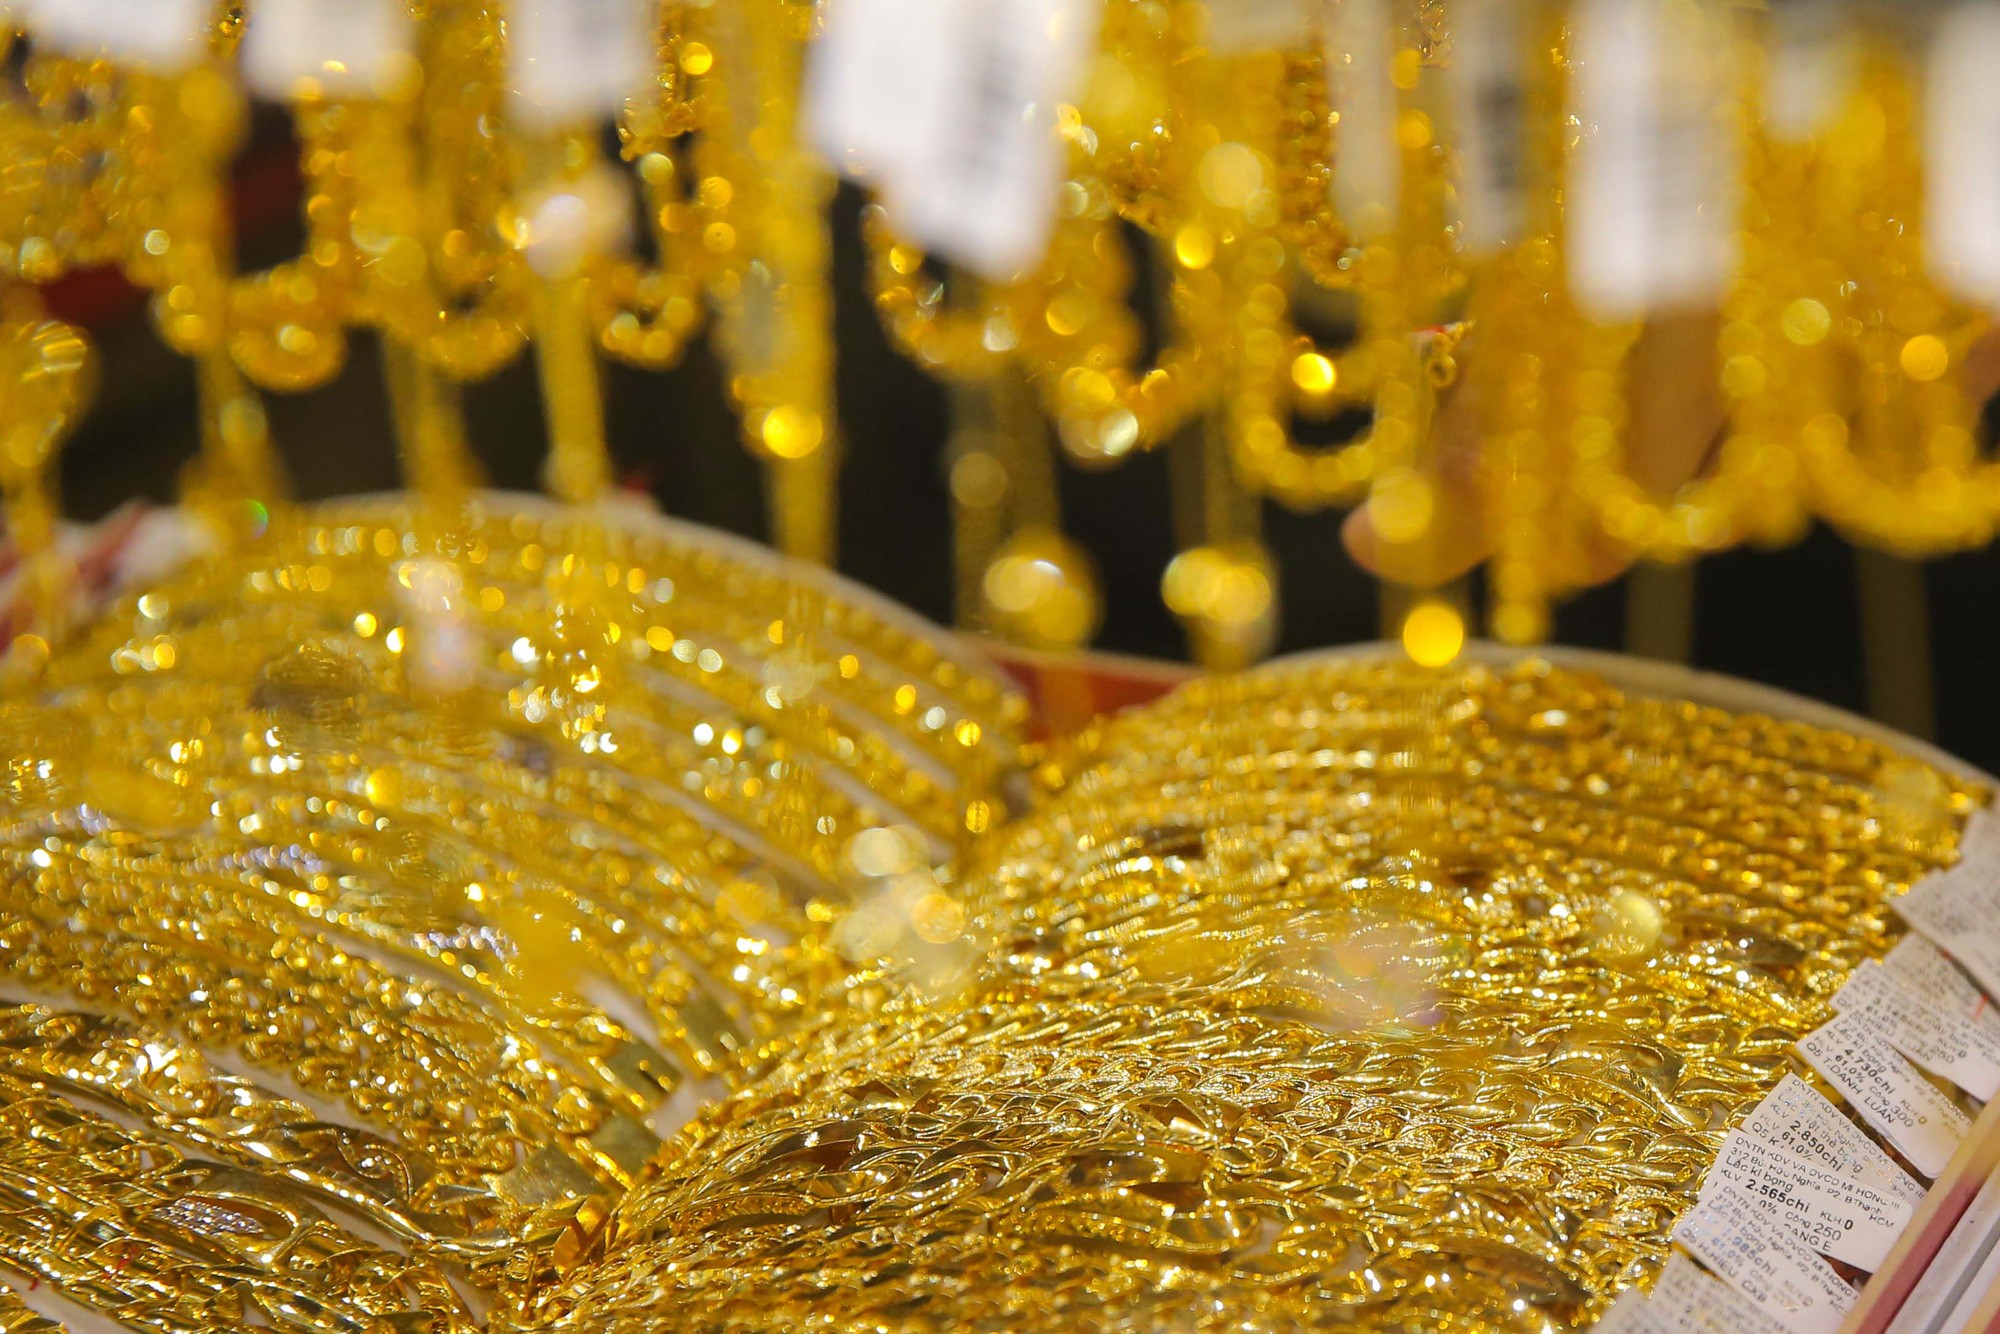 
Tuổi vàng được coi là một đơn vị để đo độ tinh khiết đối với những sản phẩm được làm bằng vàng
